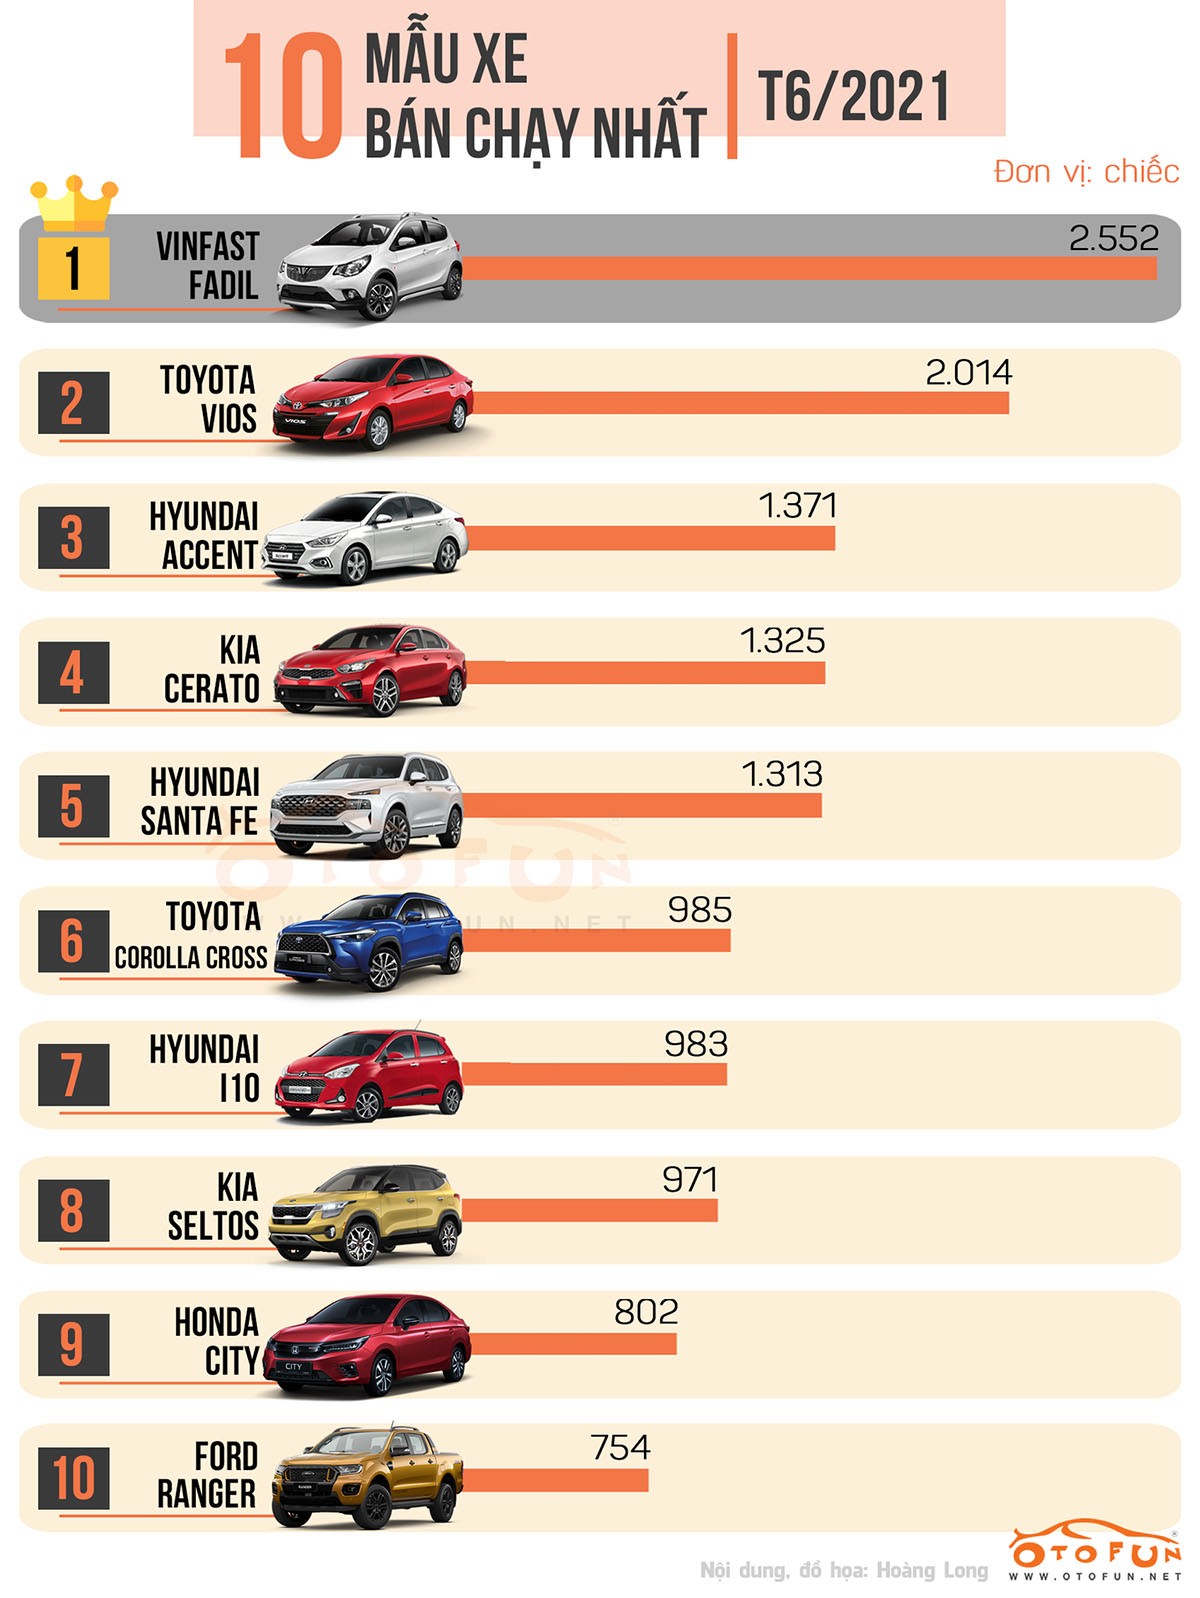 Top 10 xe ô tô bán chạy nhất tháng 6/2021: VinFast Fadil vẫn giữ ngôi đầu